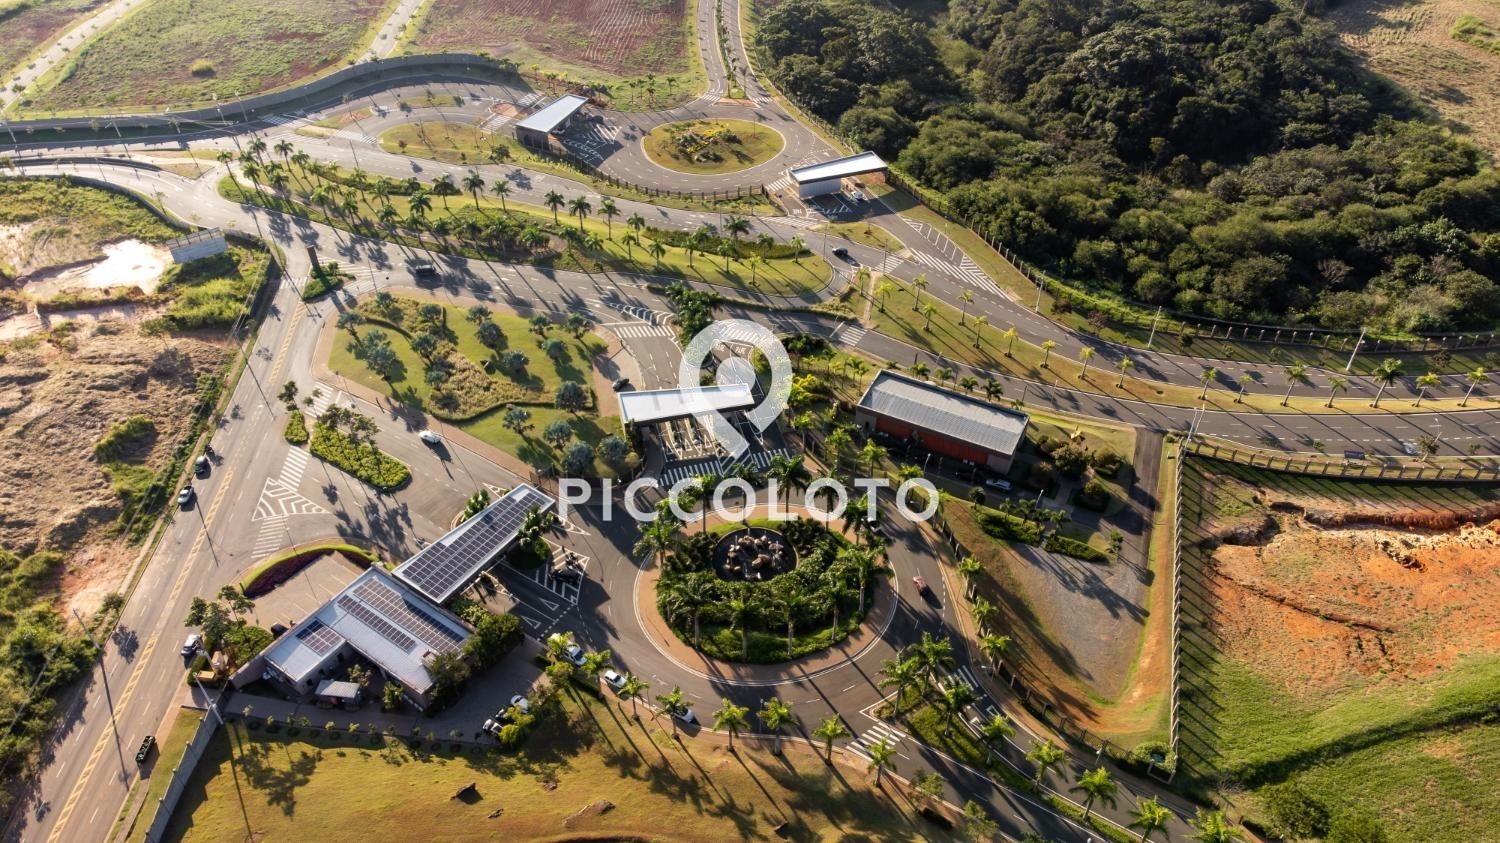 Piccoloto -Casa à venda no Loteamento Residencial Entre Verdes (Sousas) em Campinas